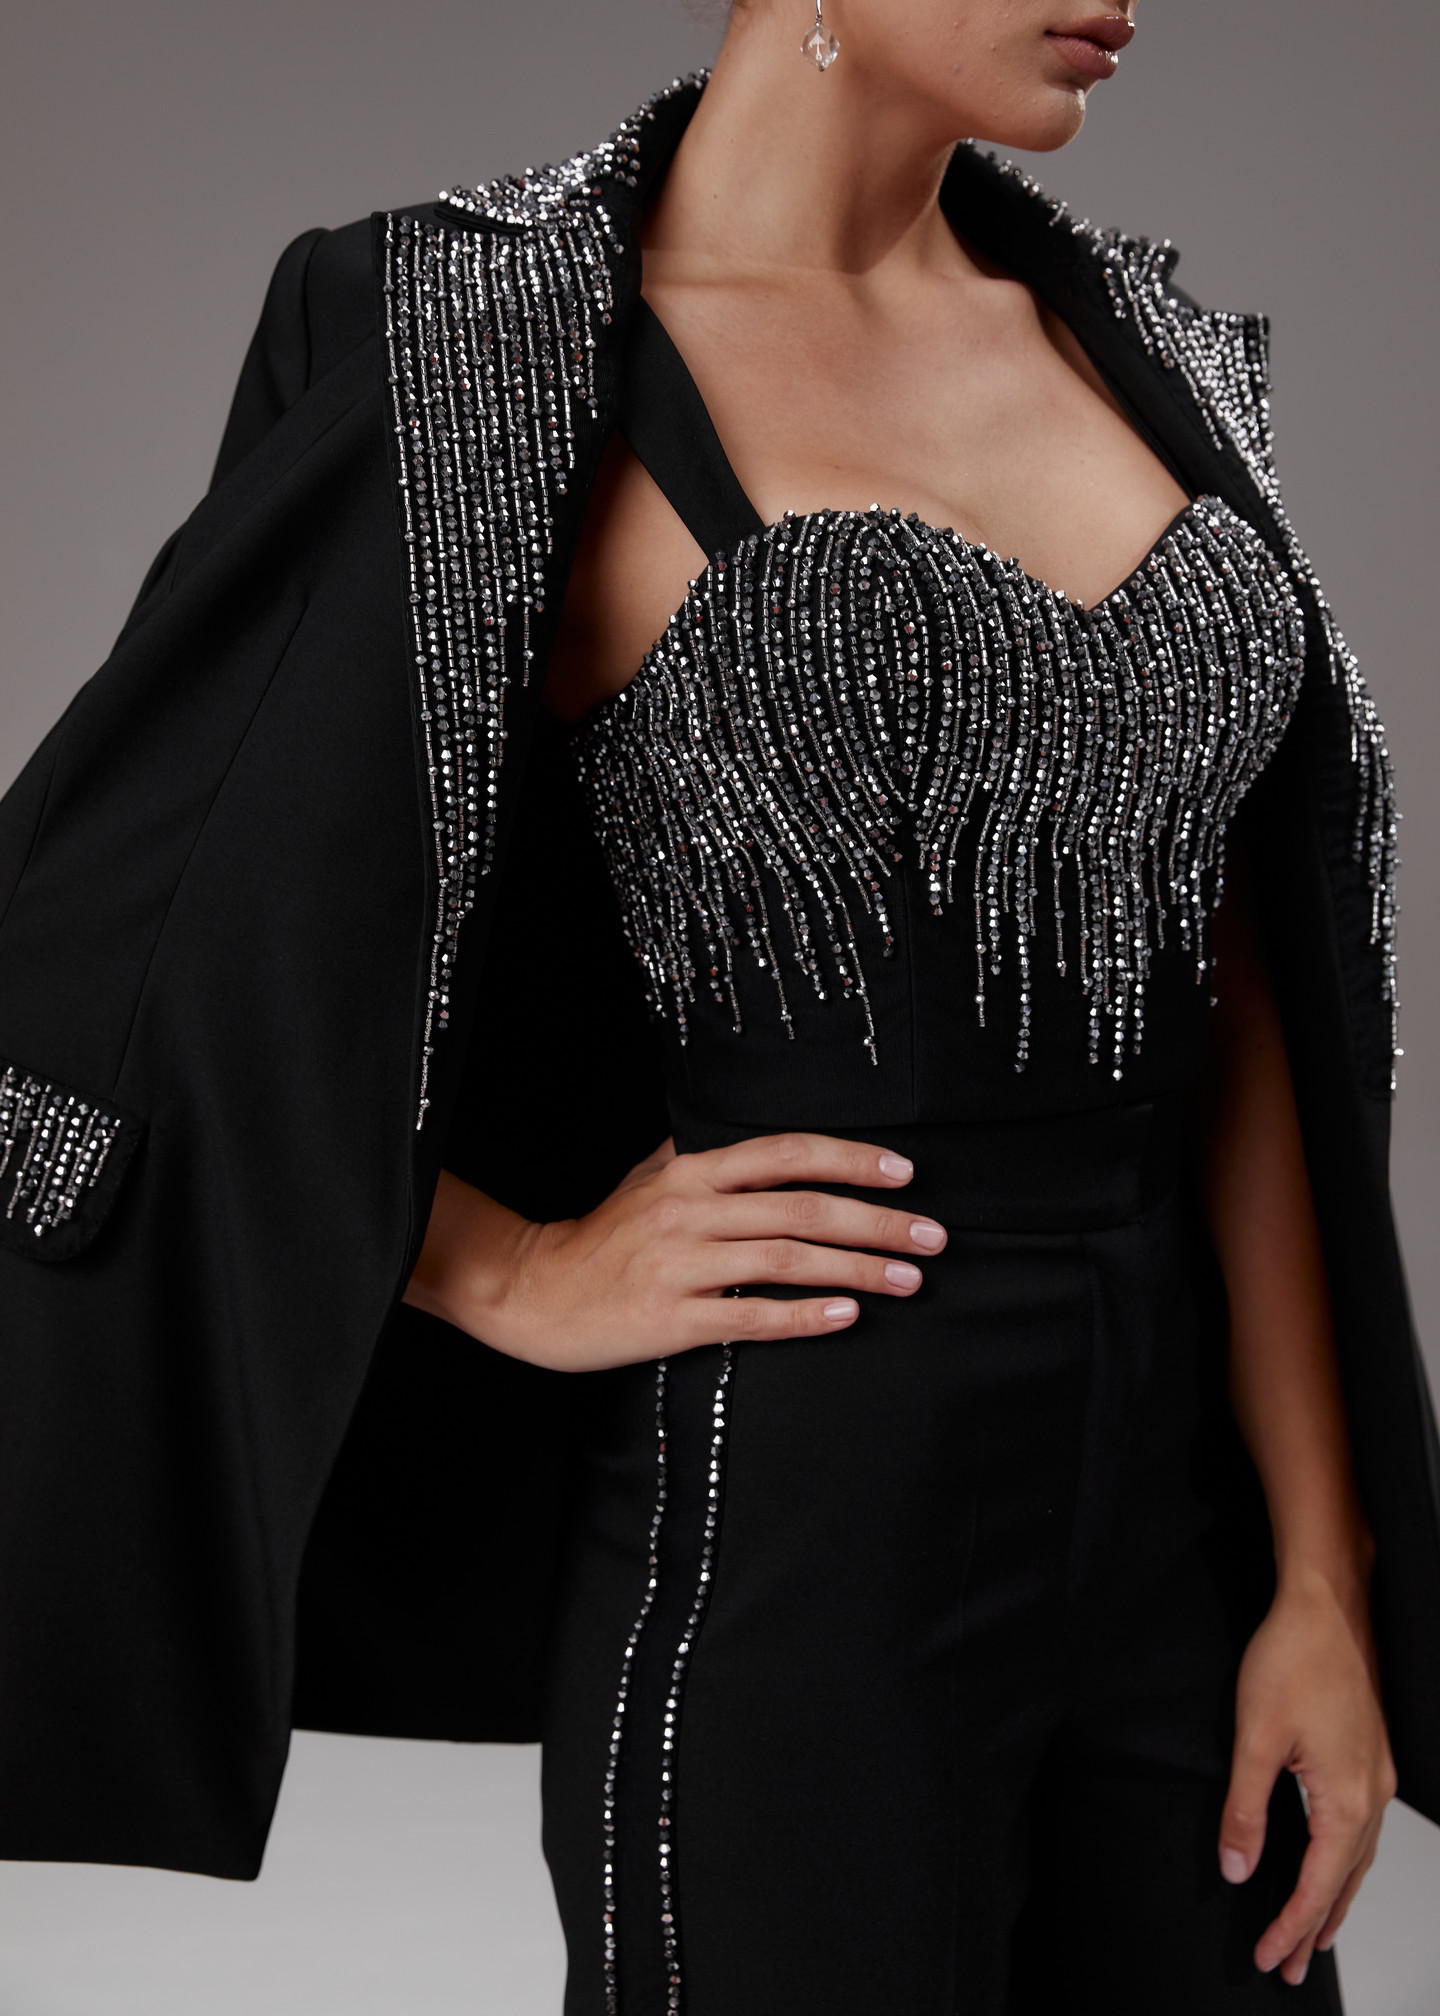 Жакет с вышивкой, 2023, одежда, жакет, вечернее, черный, черный костюм расшитый серебром, вышивка, серебряный, рукава